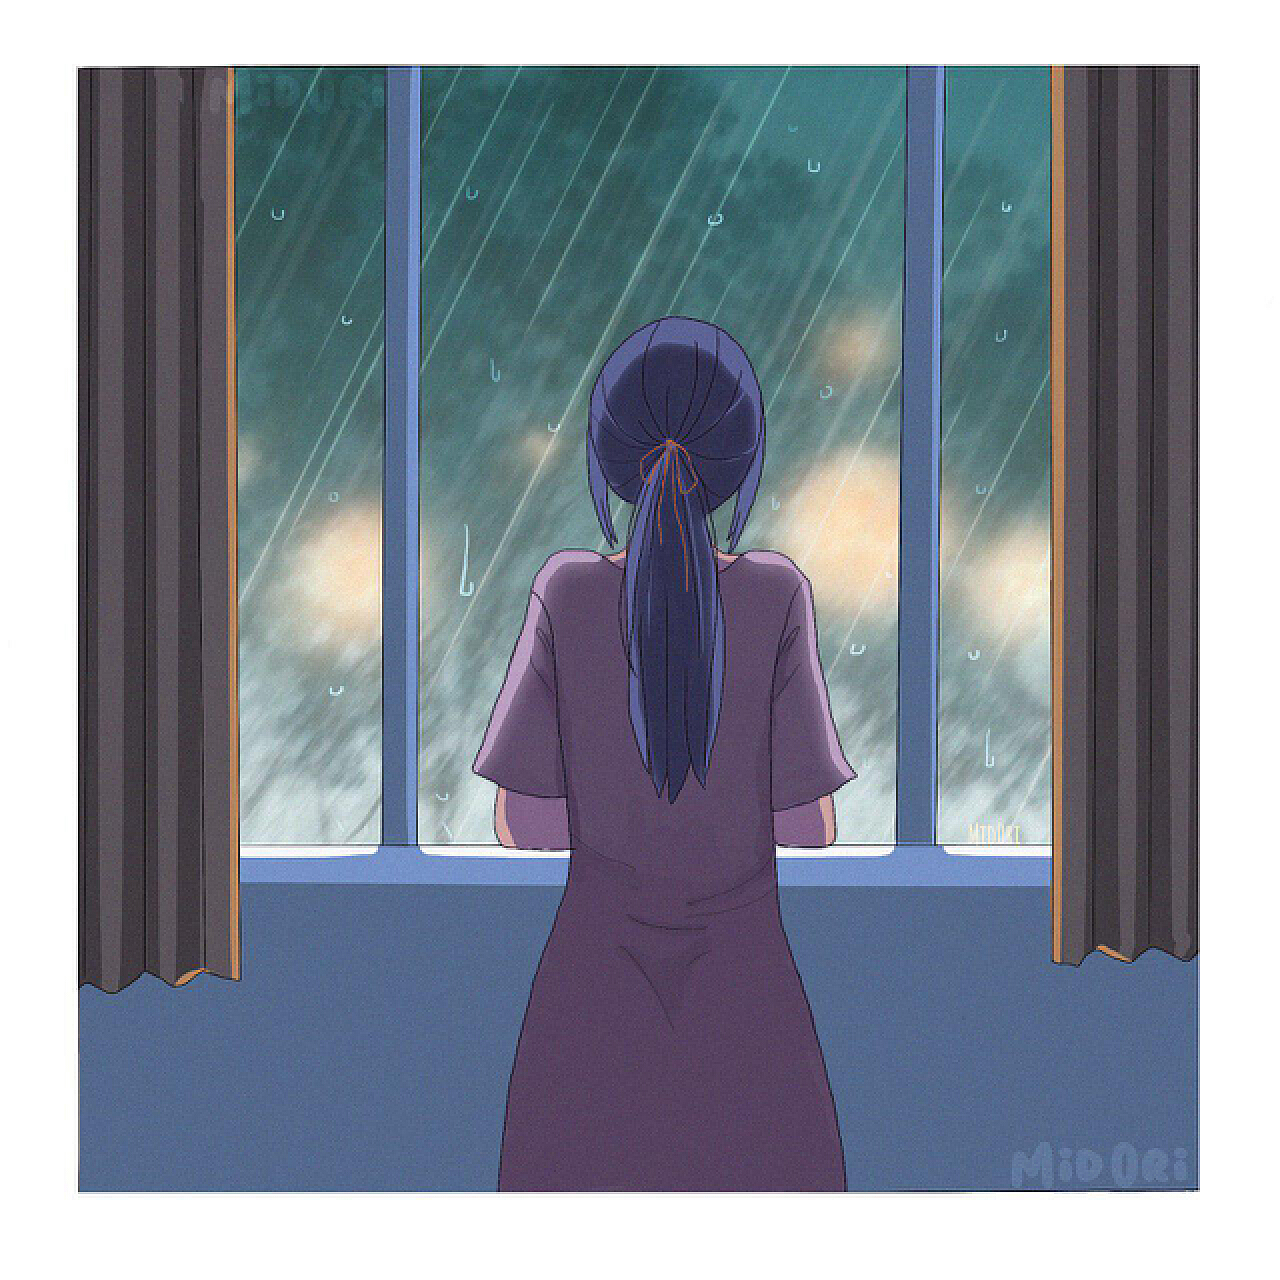 蓝色系卡通手绘风夏景下雨撑伞女孩配图插画图片-千库网